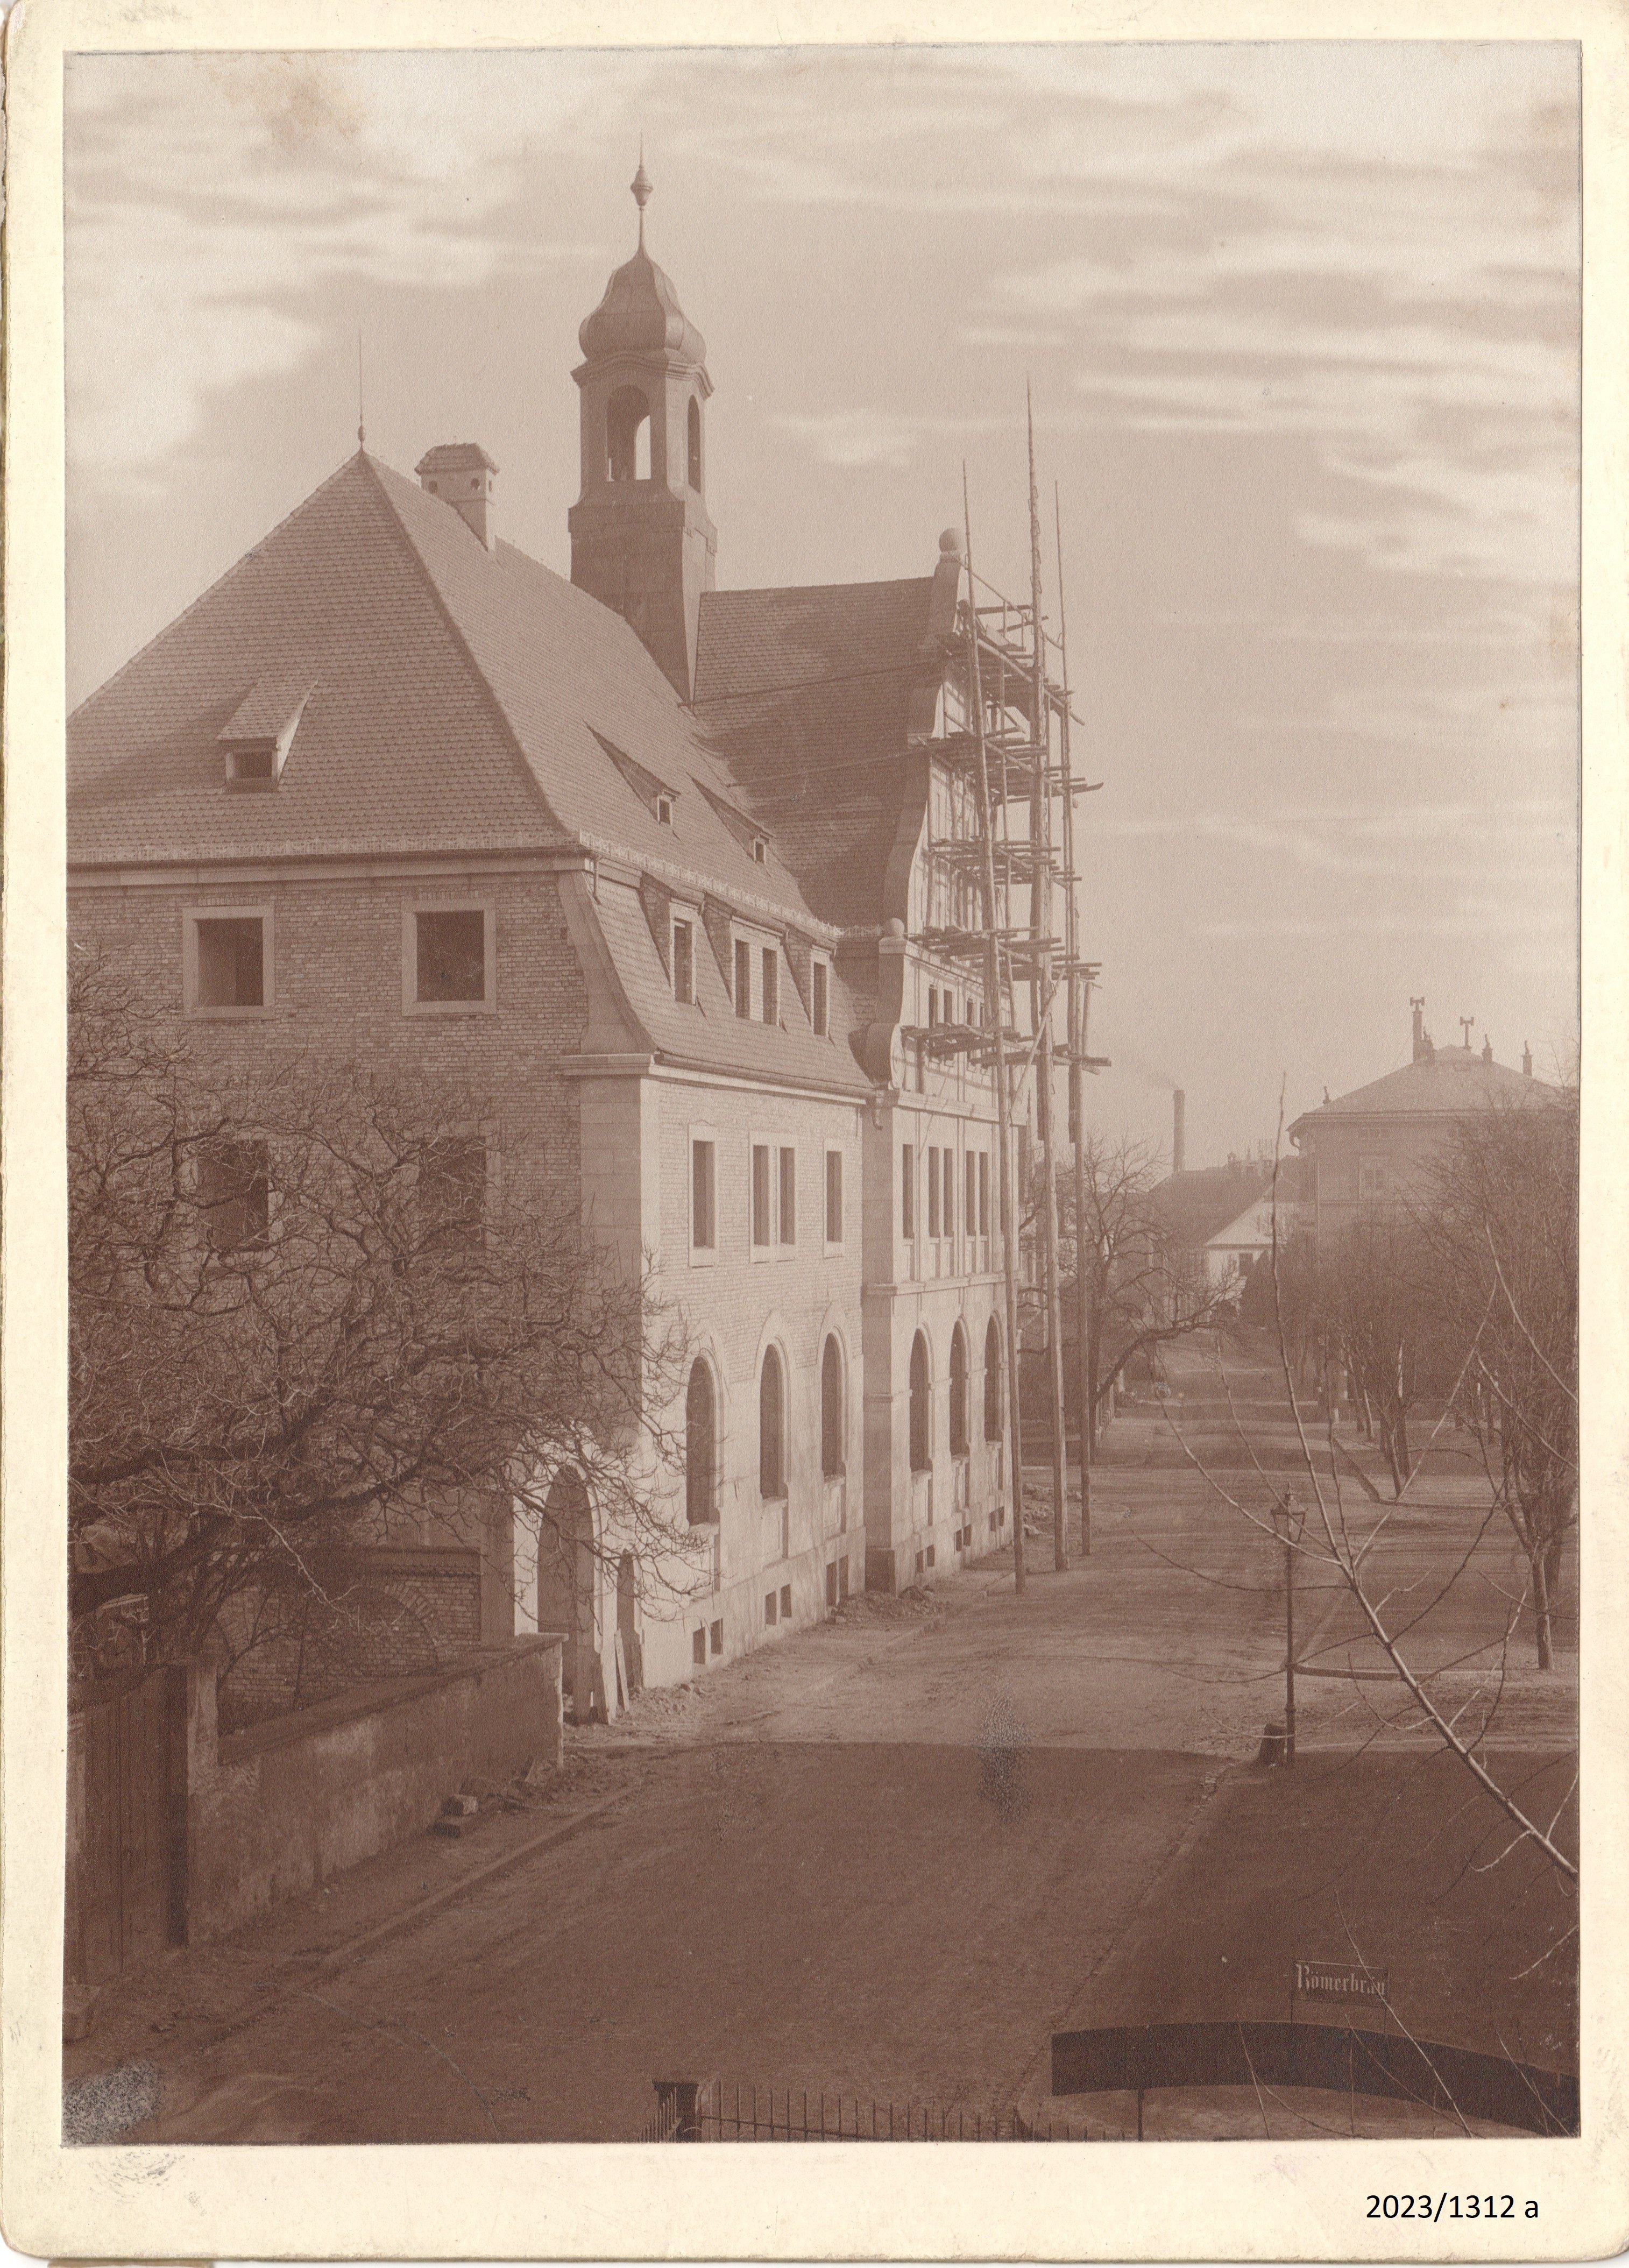 Bad Dürkheim, Altes Postgebäude vor der Fertigstellung, 1909 (Stadtmuseum Bad Dürkheim im Kulturzentrum Haus Catoir CC BY-NC-SA)